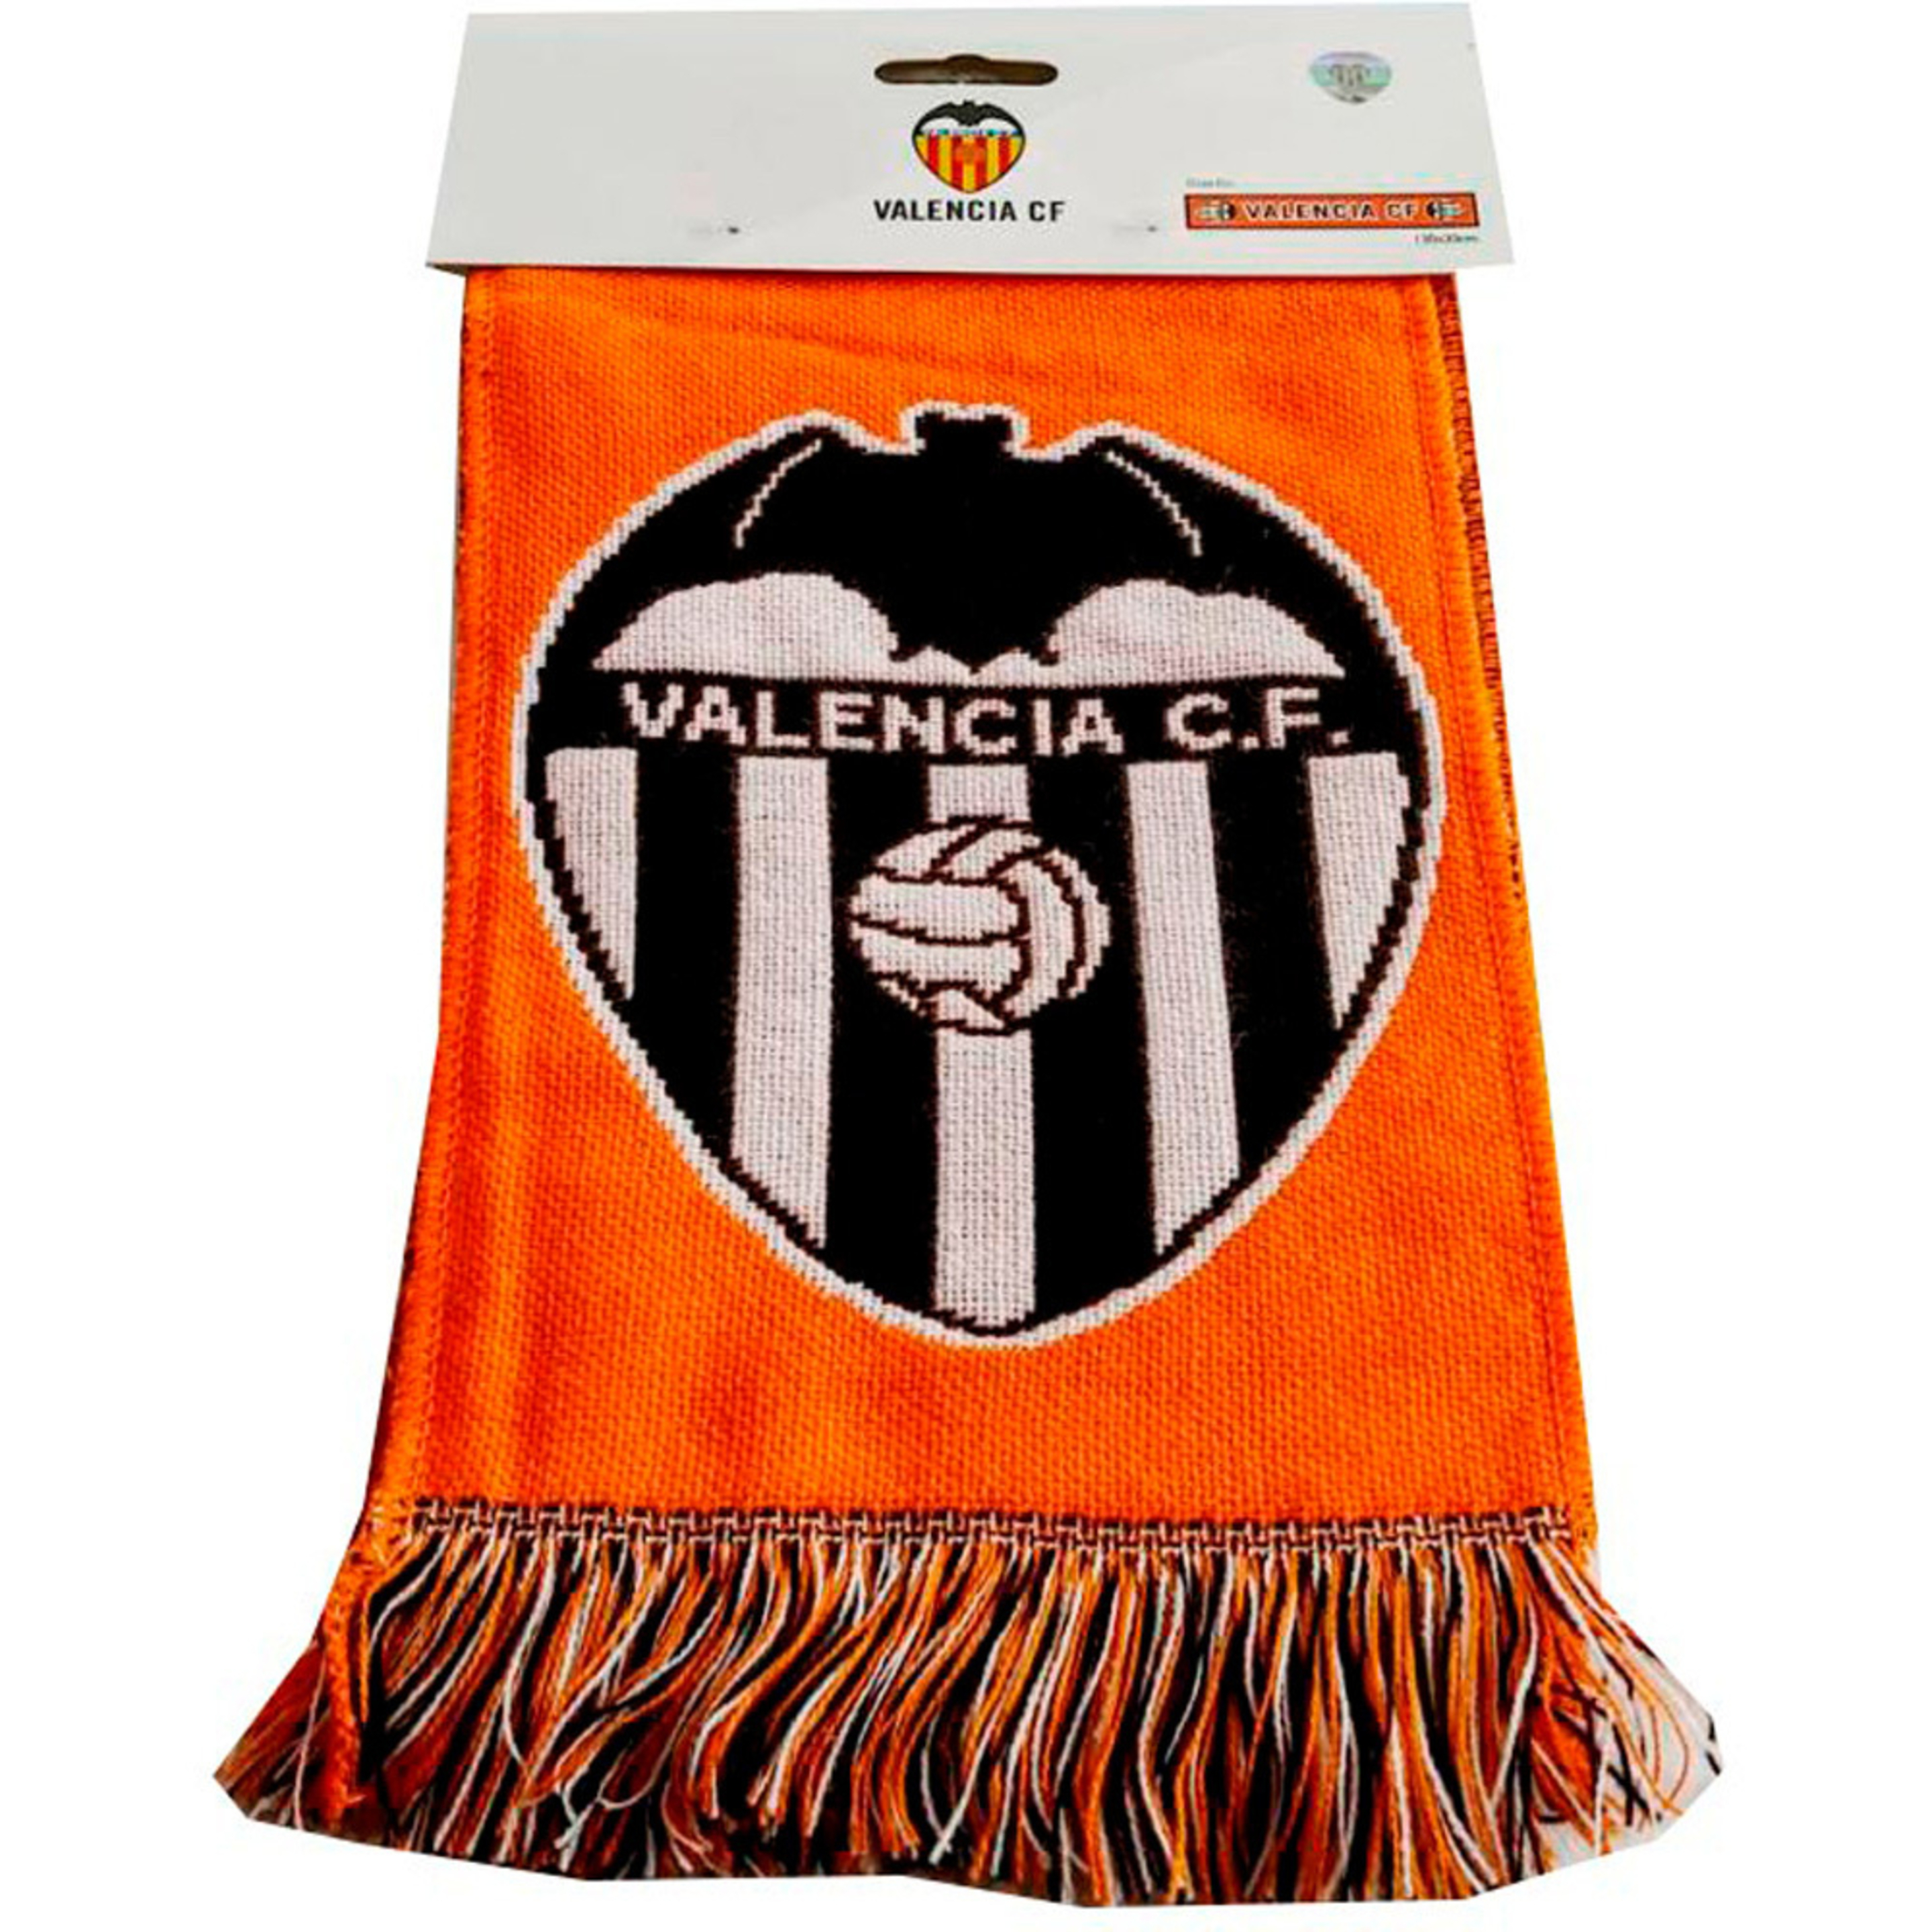 Valencia Cf Scarf.